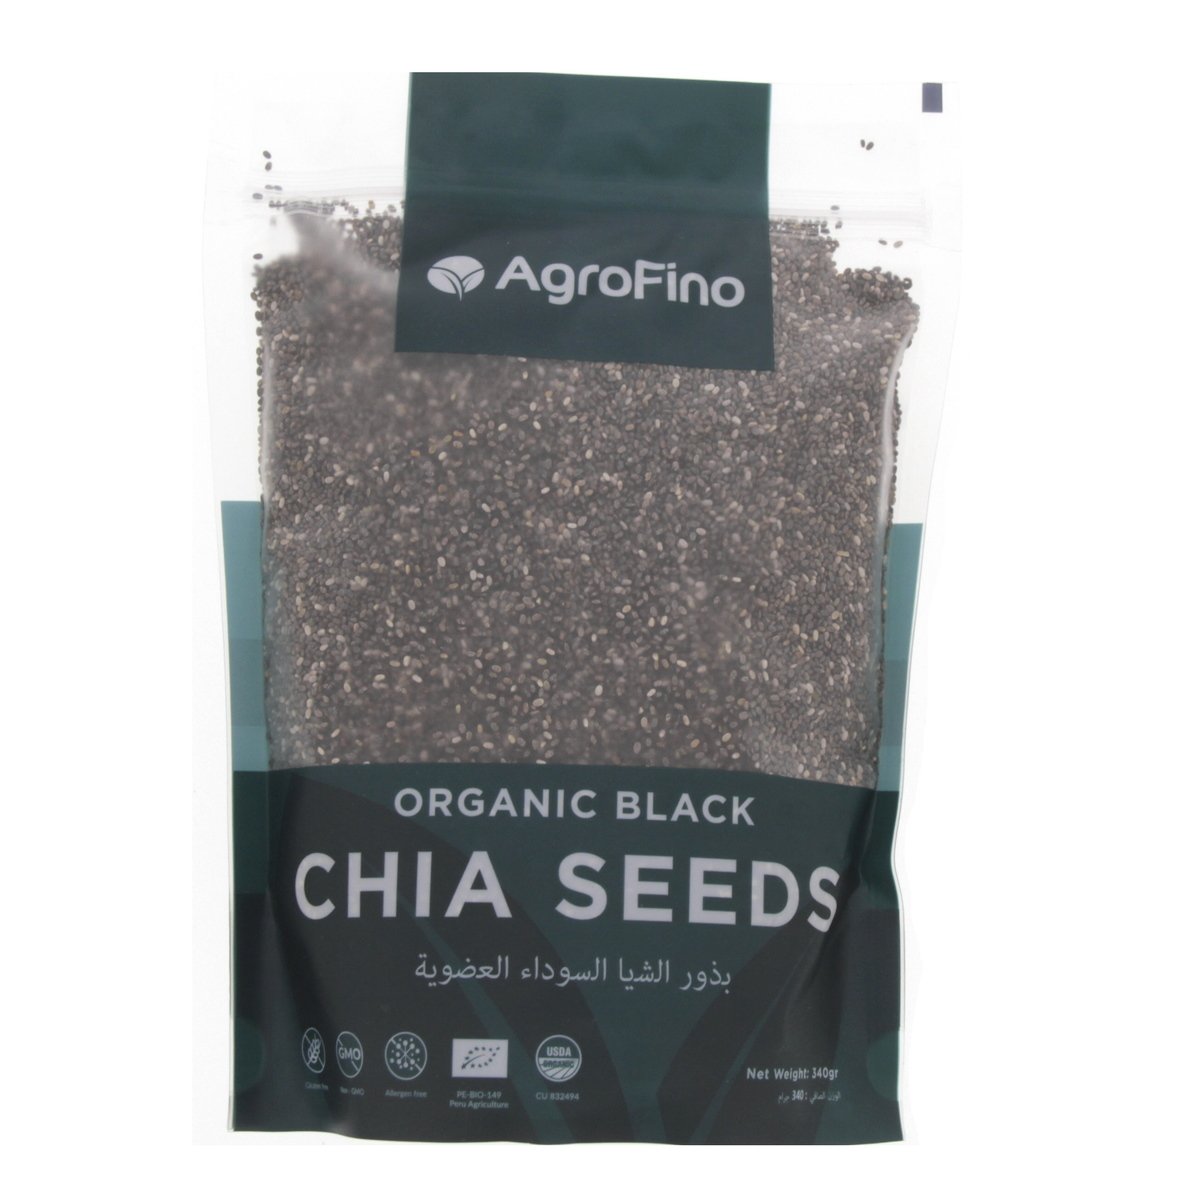 Buy Agrofino Organic Black Chia Seeds 340 g Online at Best Price | Organic Food | Lulu UAE in UAE